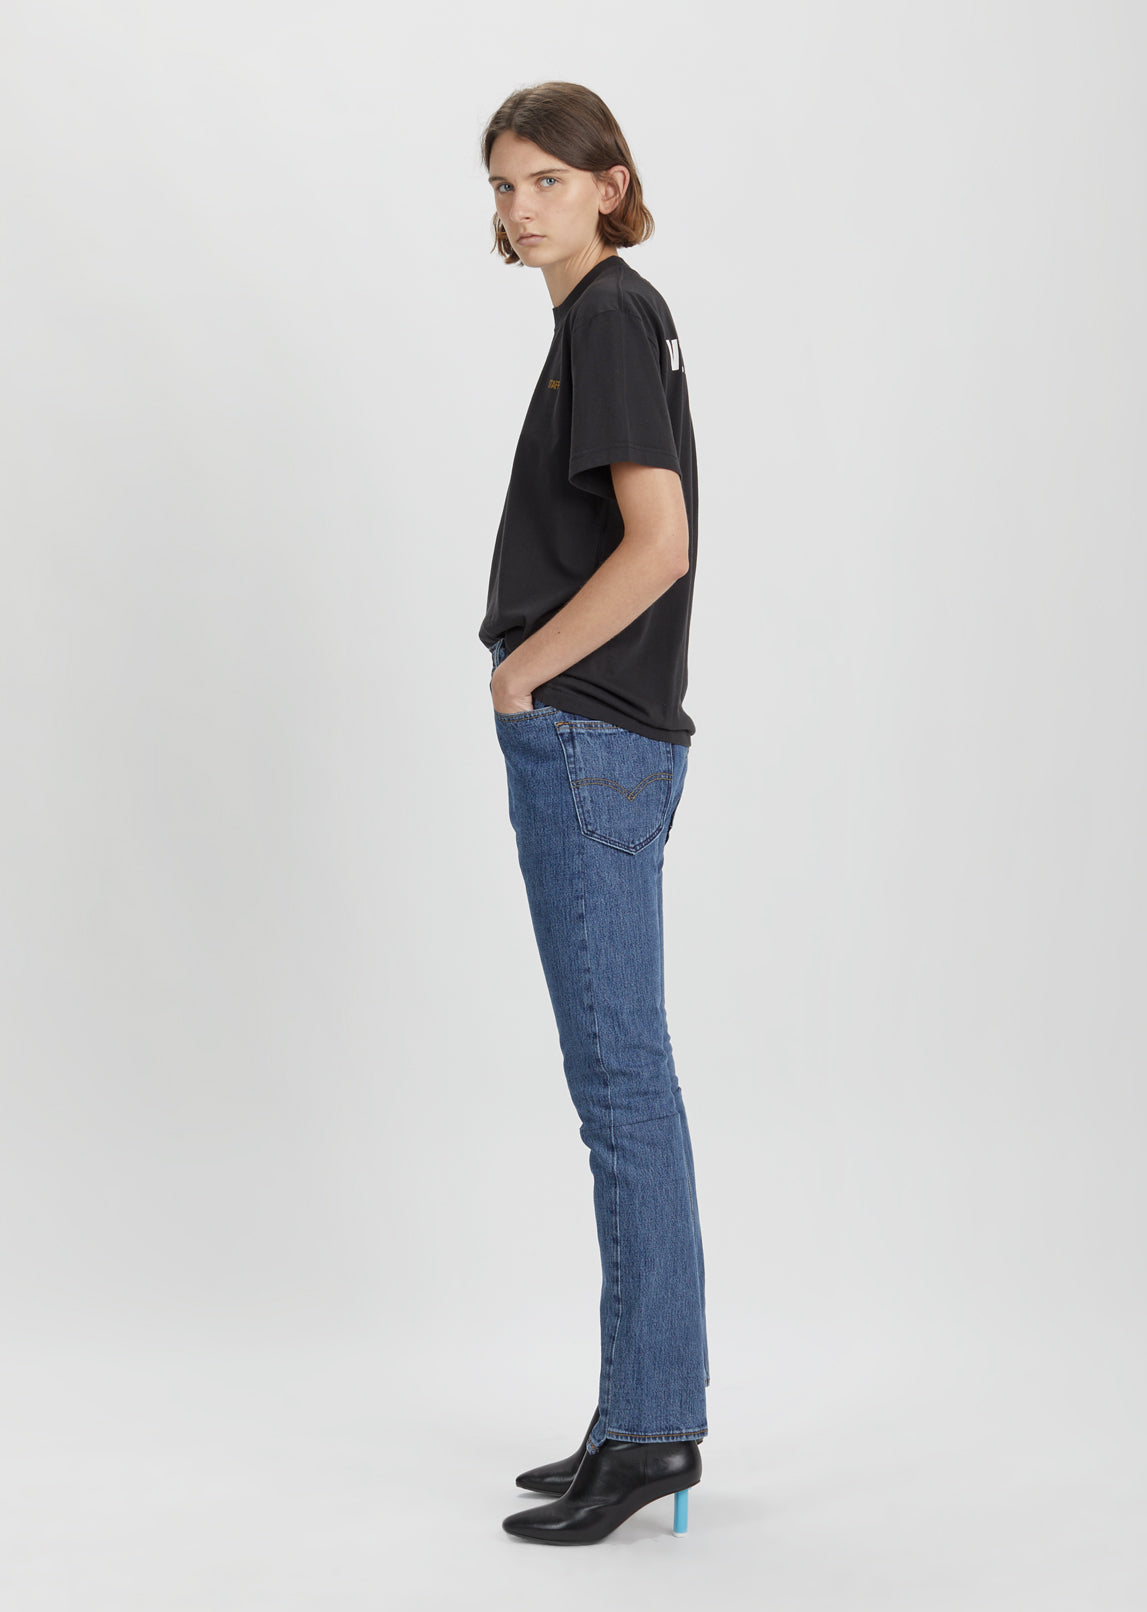 X Levi's High Waist Reworked Jeans by Vetements - La Garçonne